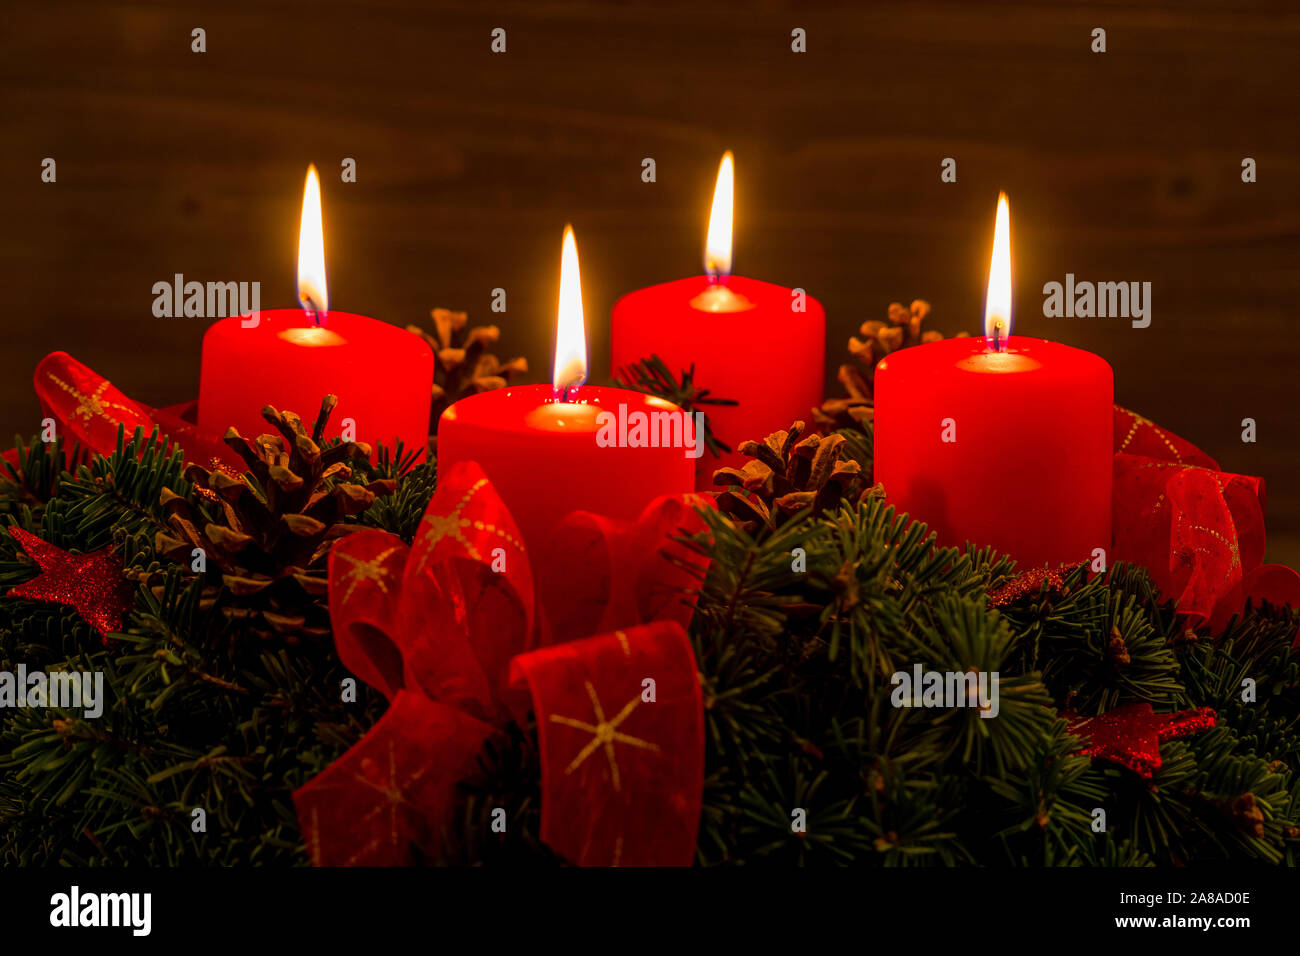 Ein Adventskranz zu Weihnachten sorgt für romatinsche Stimmung in der stillen Avvento Zeit. 4 brennende Kerzen, 4. Avvento, Foto Stock